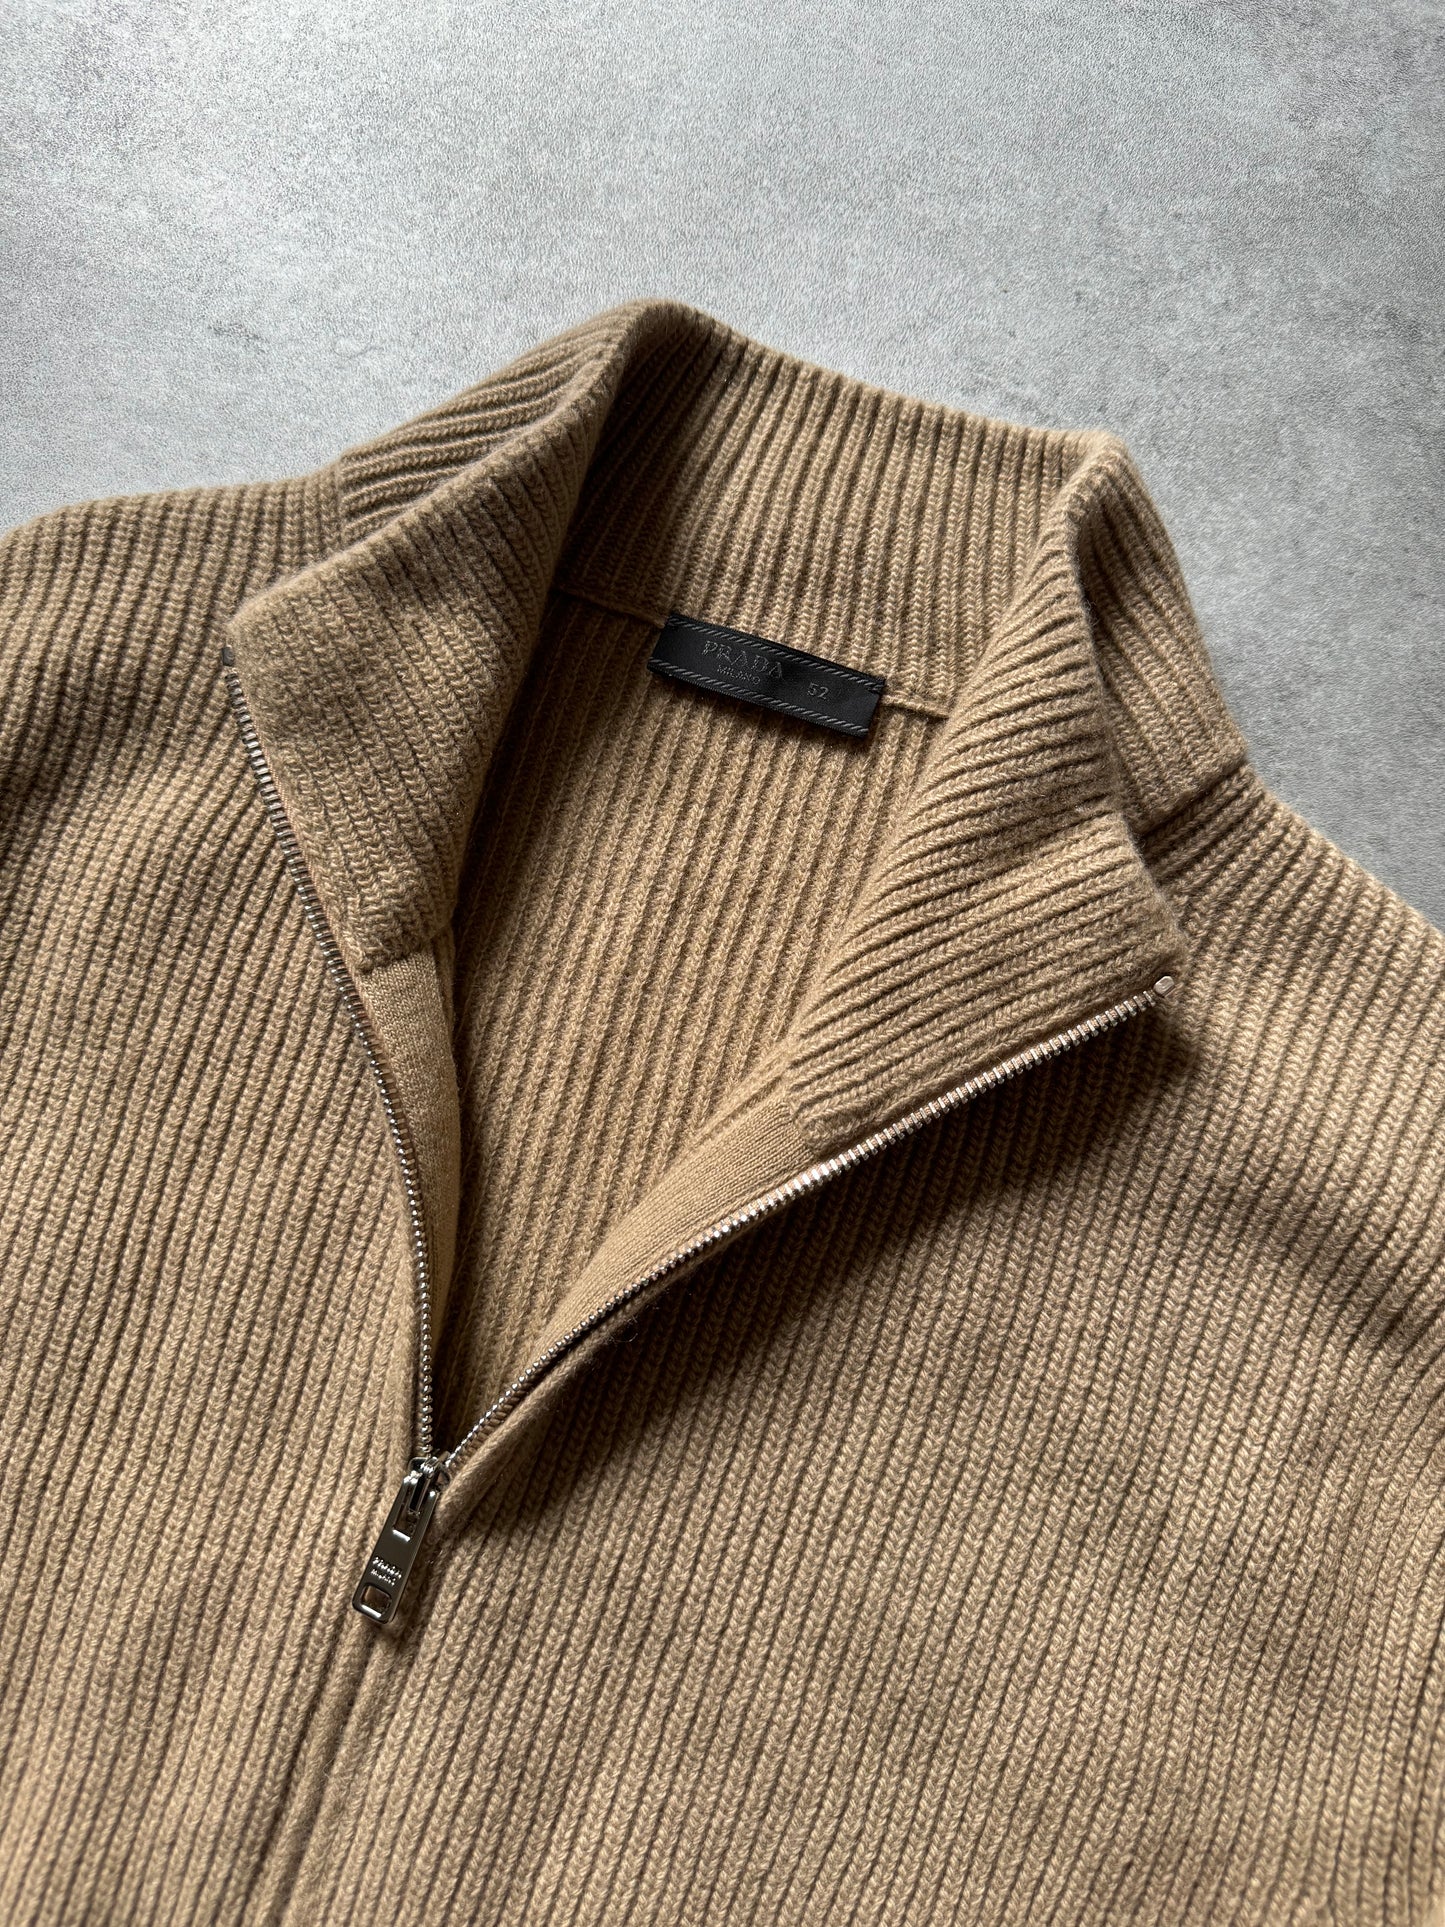 SS2018 Prada Camel Full Zip Wool Minimalist Sweater (L) - 4